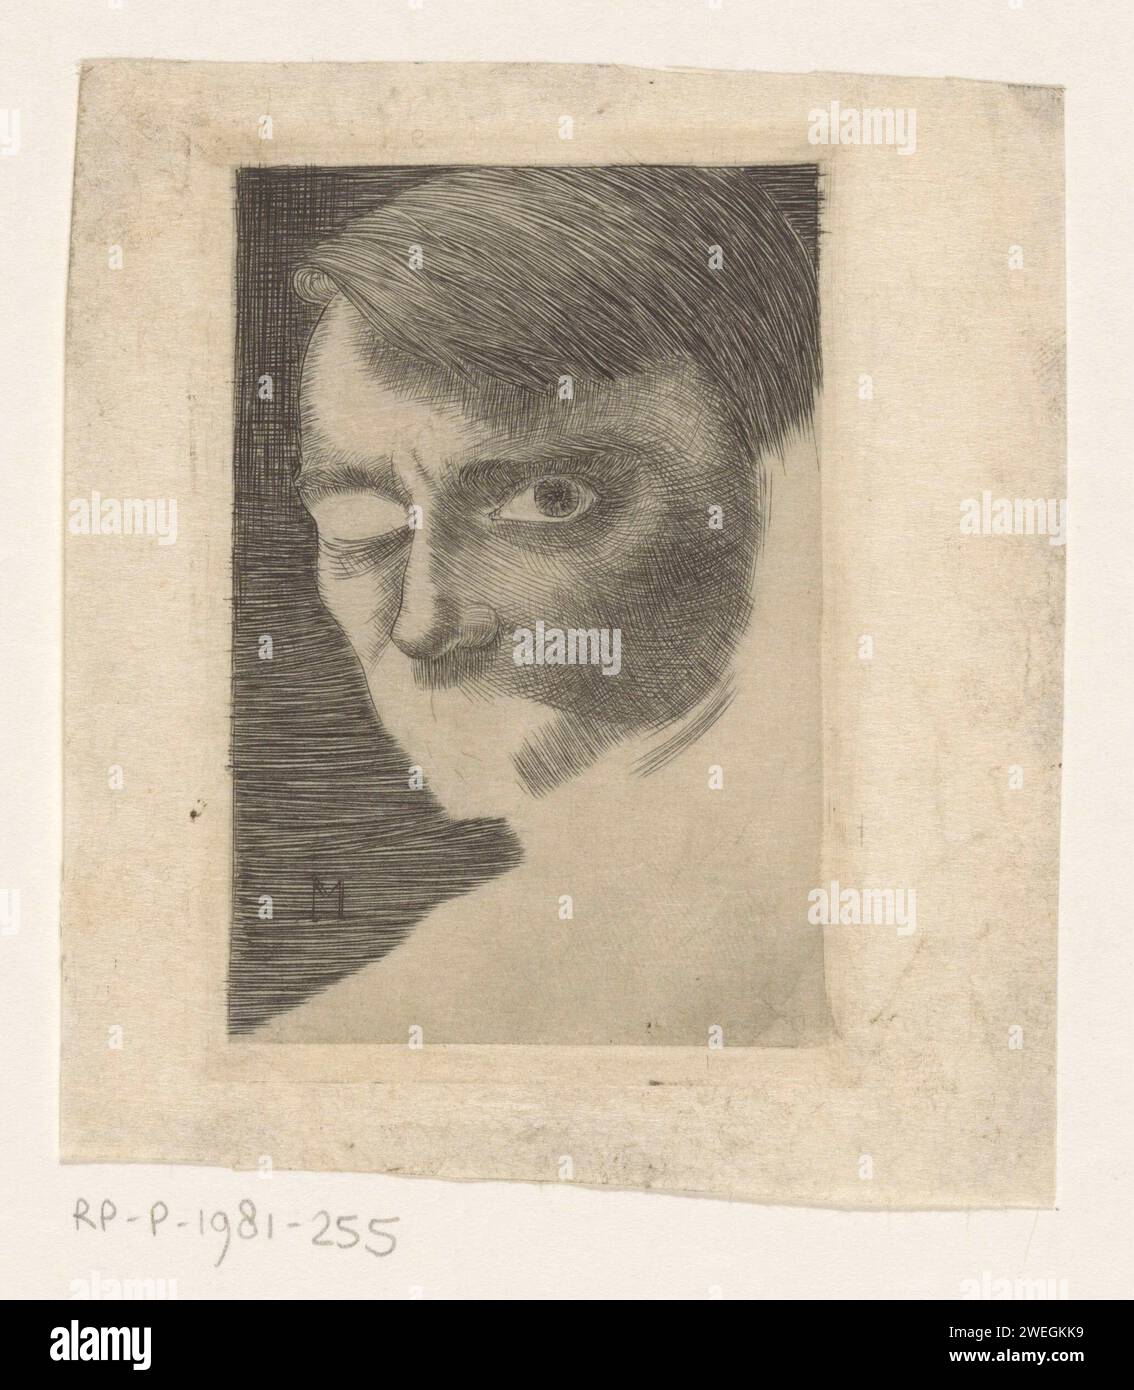 ZELFORTART, JAN Mankes, 1917 stampa occhi destri, bocca, mento, orecchio sinistro e collo mancanti. ritratto con incisione su carta, autoritratto dell'artista Foto Stock